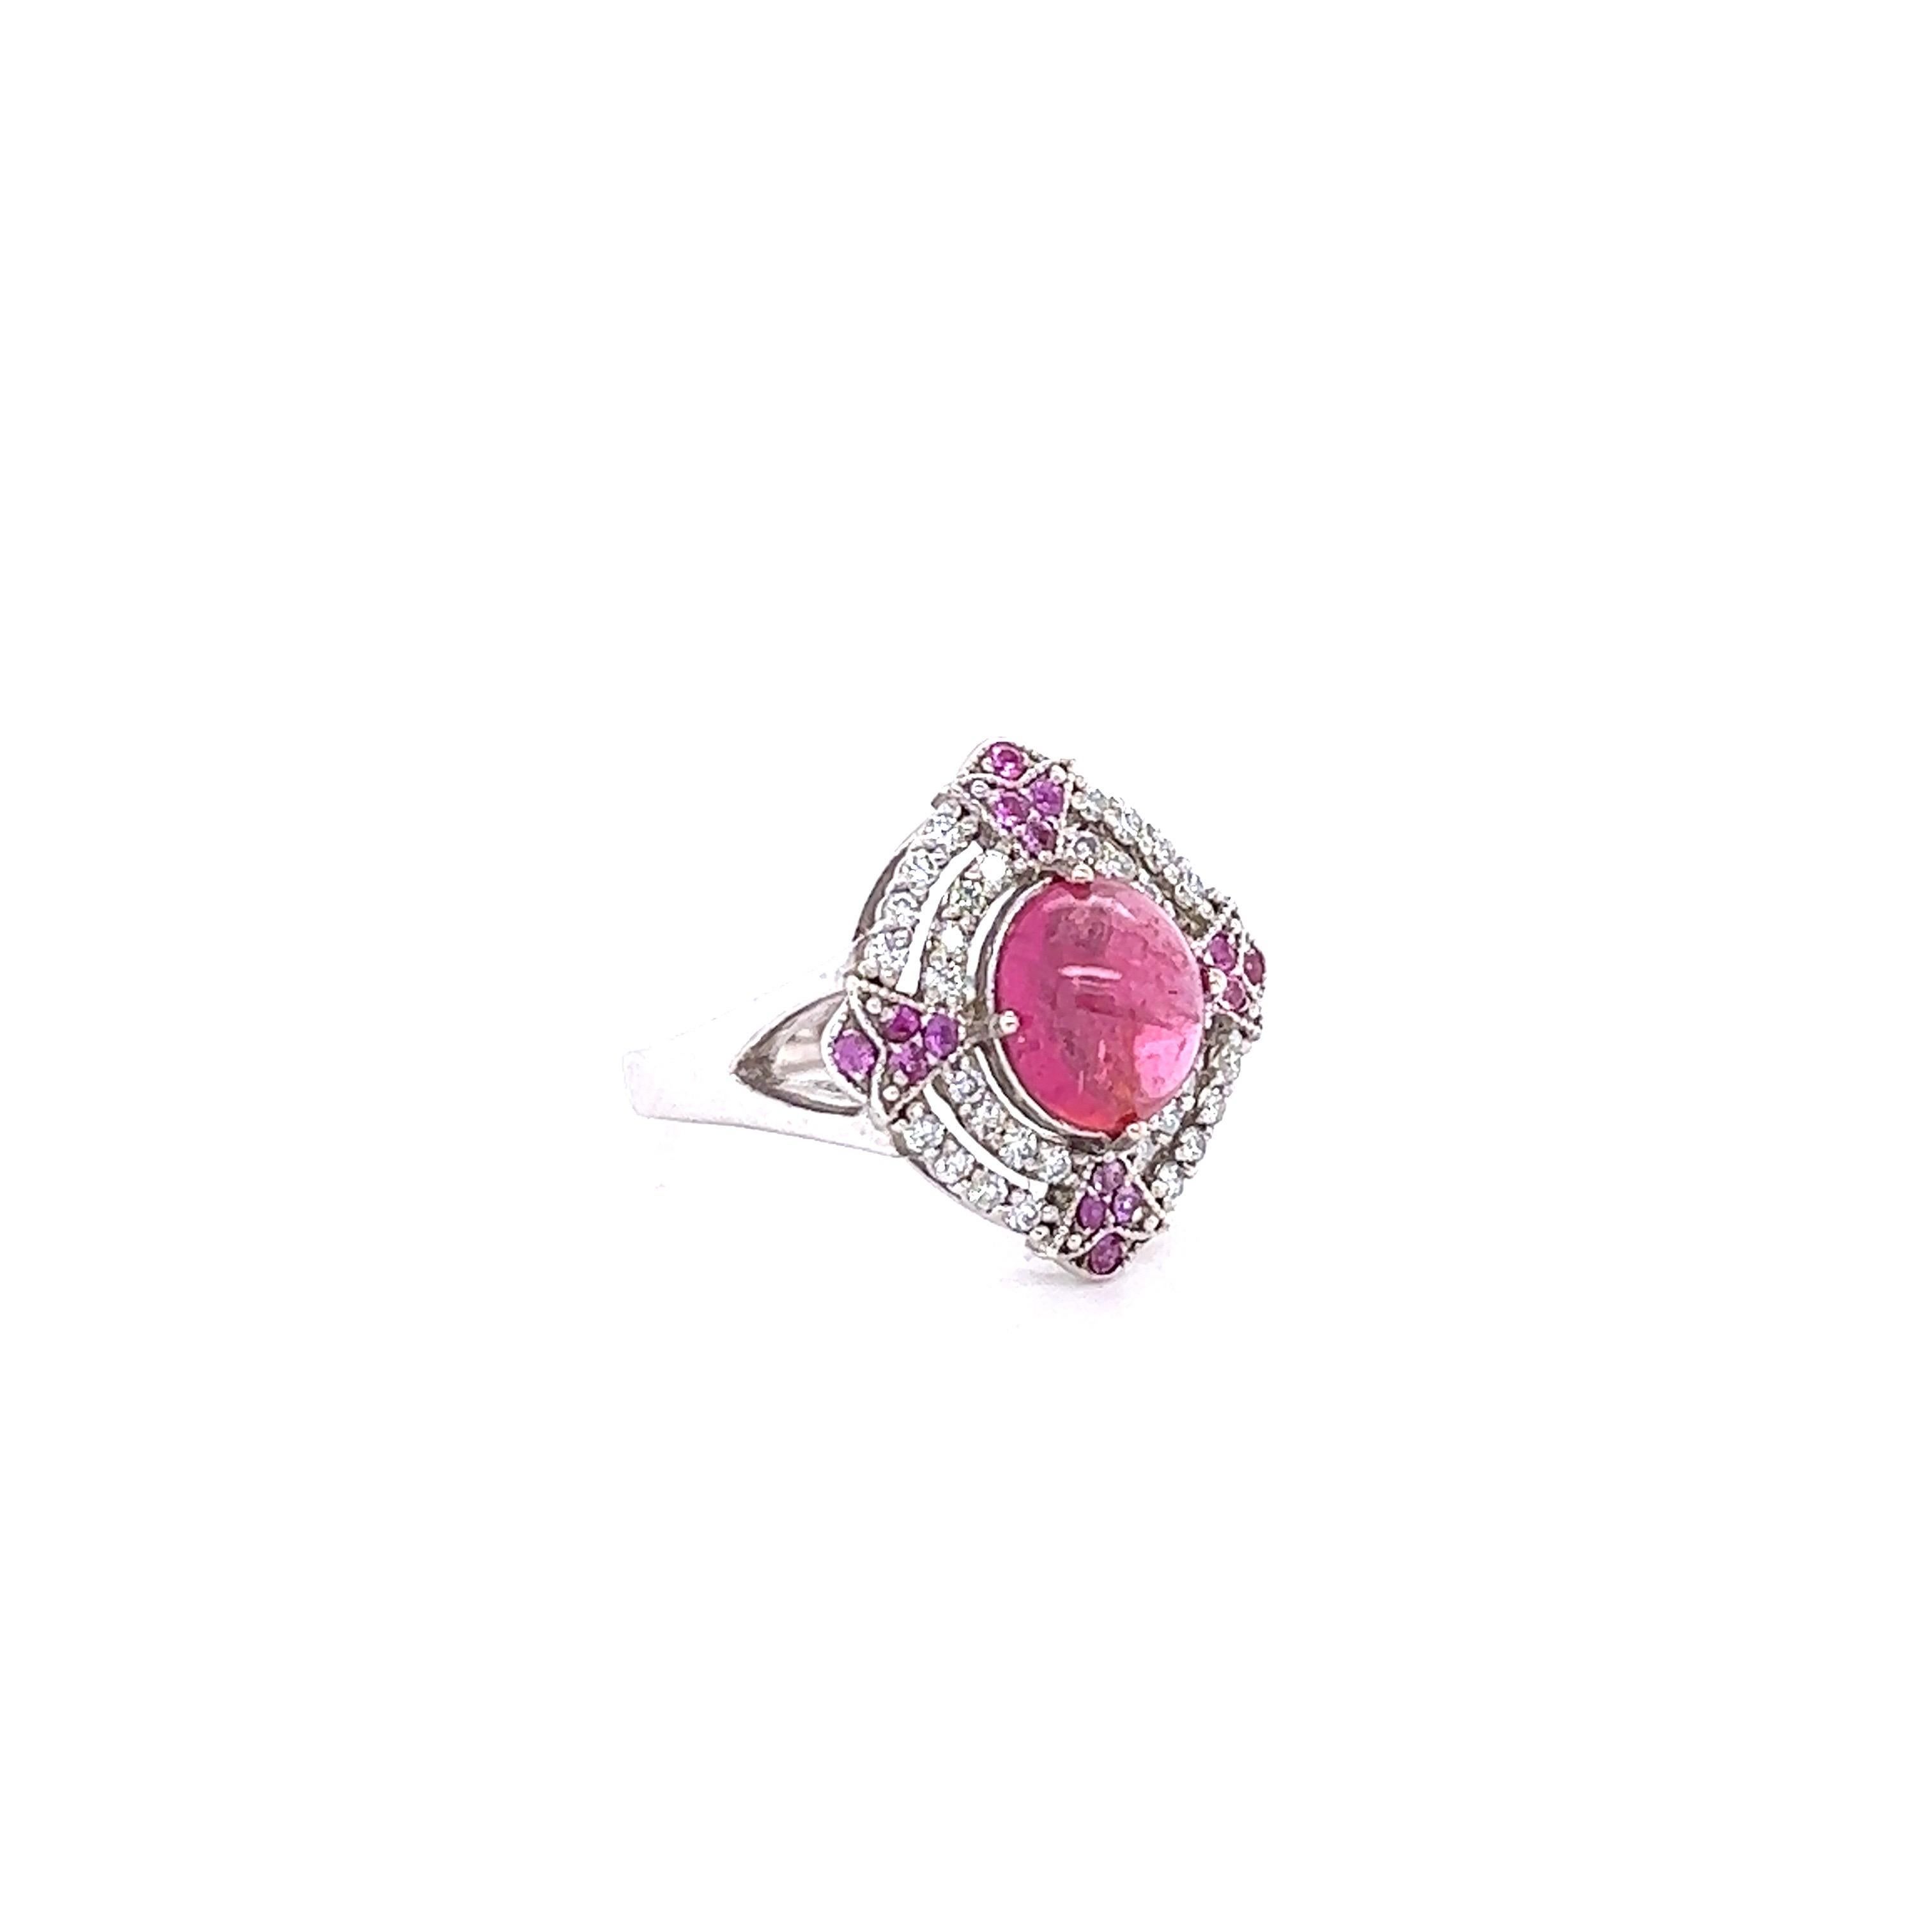 Dieser Ring hat einen Cabochon rosa Turmalin, die 2,08 Karat wiegt und misst etwa 8 mm x 6 mm. Es gibt 32 Diamanten im Rundschliff mit einem Gewicht von 0,32 Karat. (Reinheit: VS2, Farbe: H) und 16 rosa Saphire im Rundschliff mit einem Gewicht von